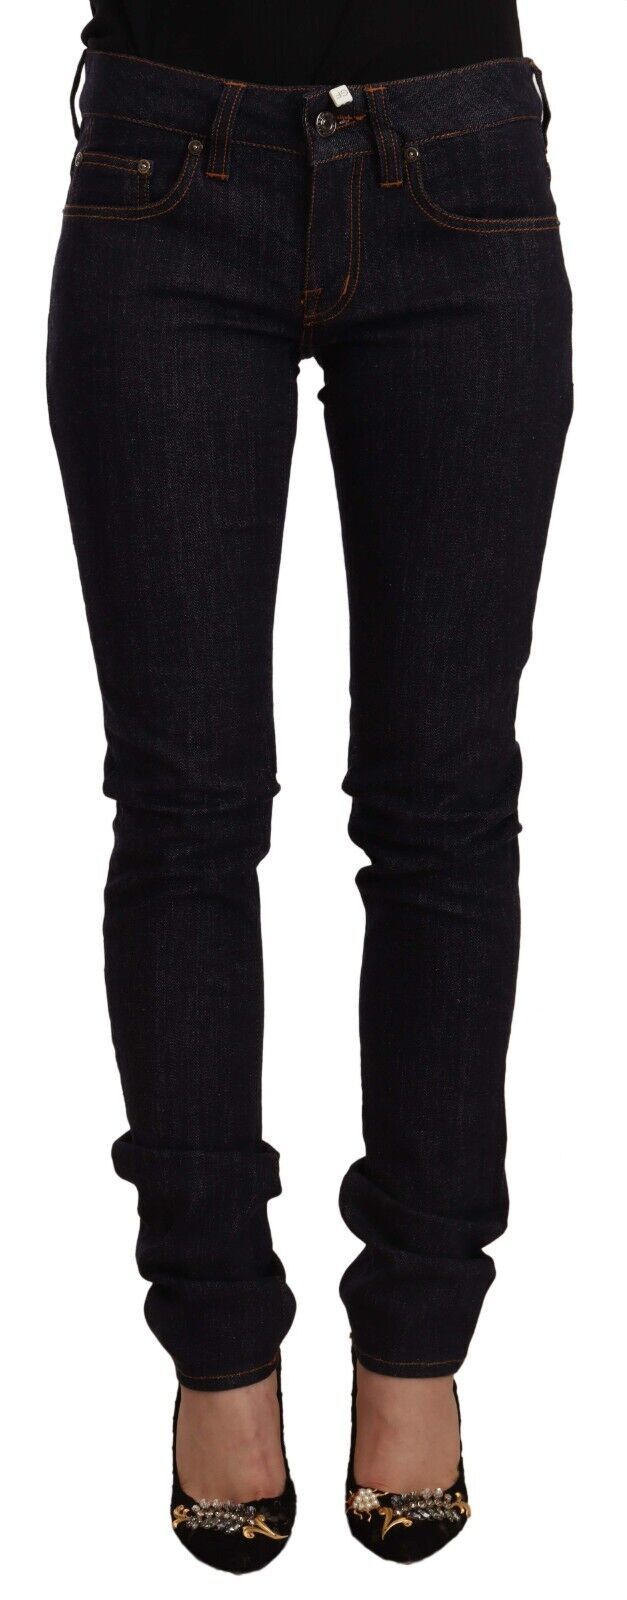 Chic Black Slim Fit Designer Jeans